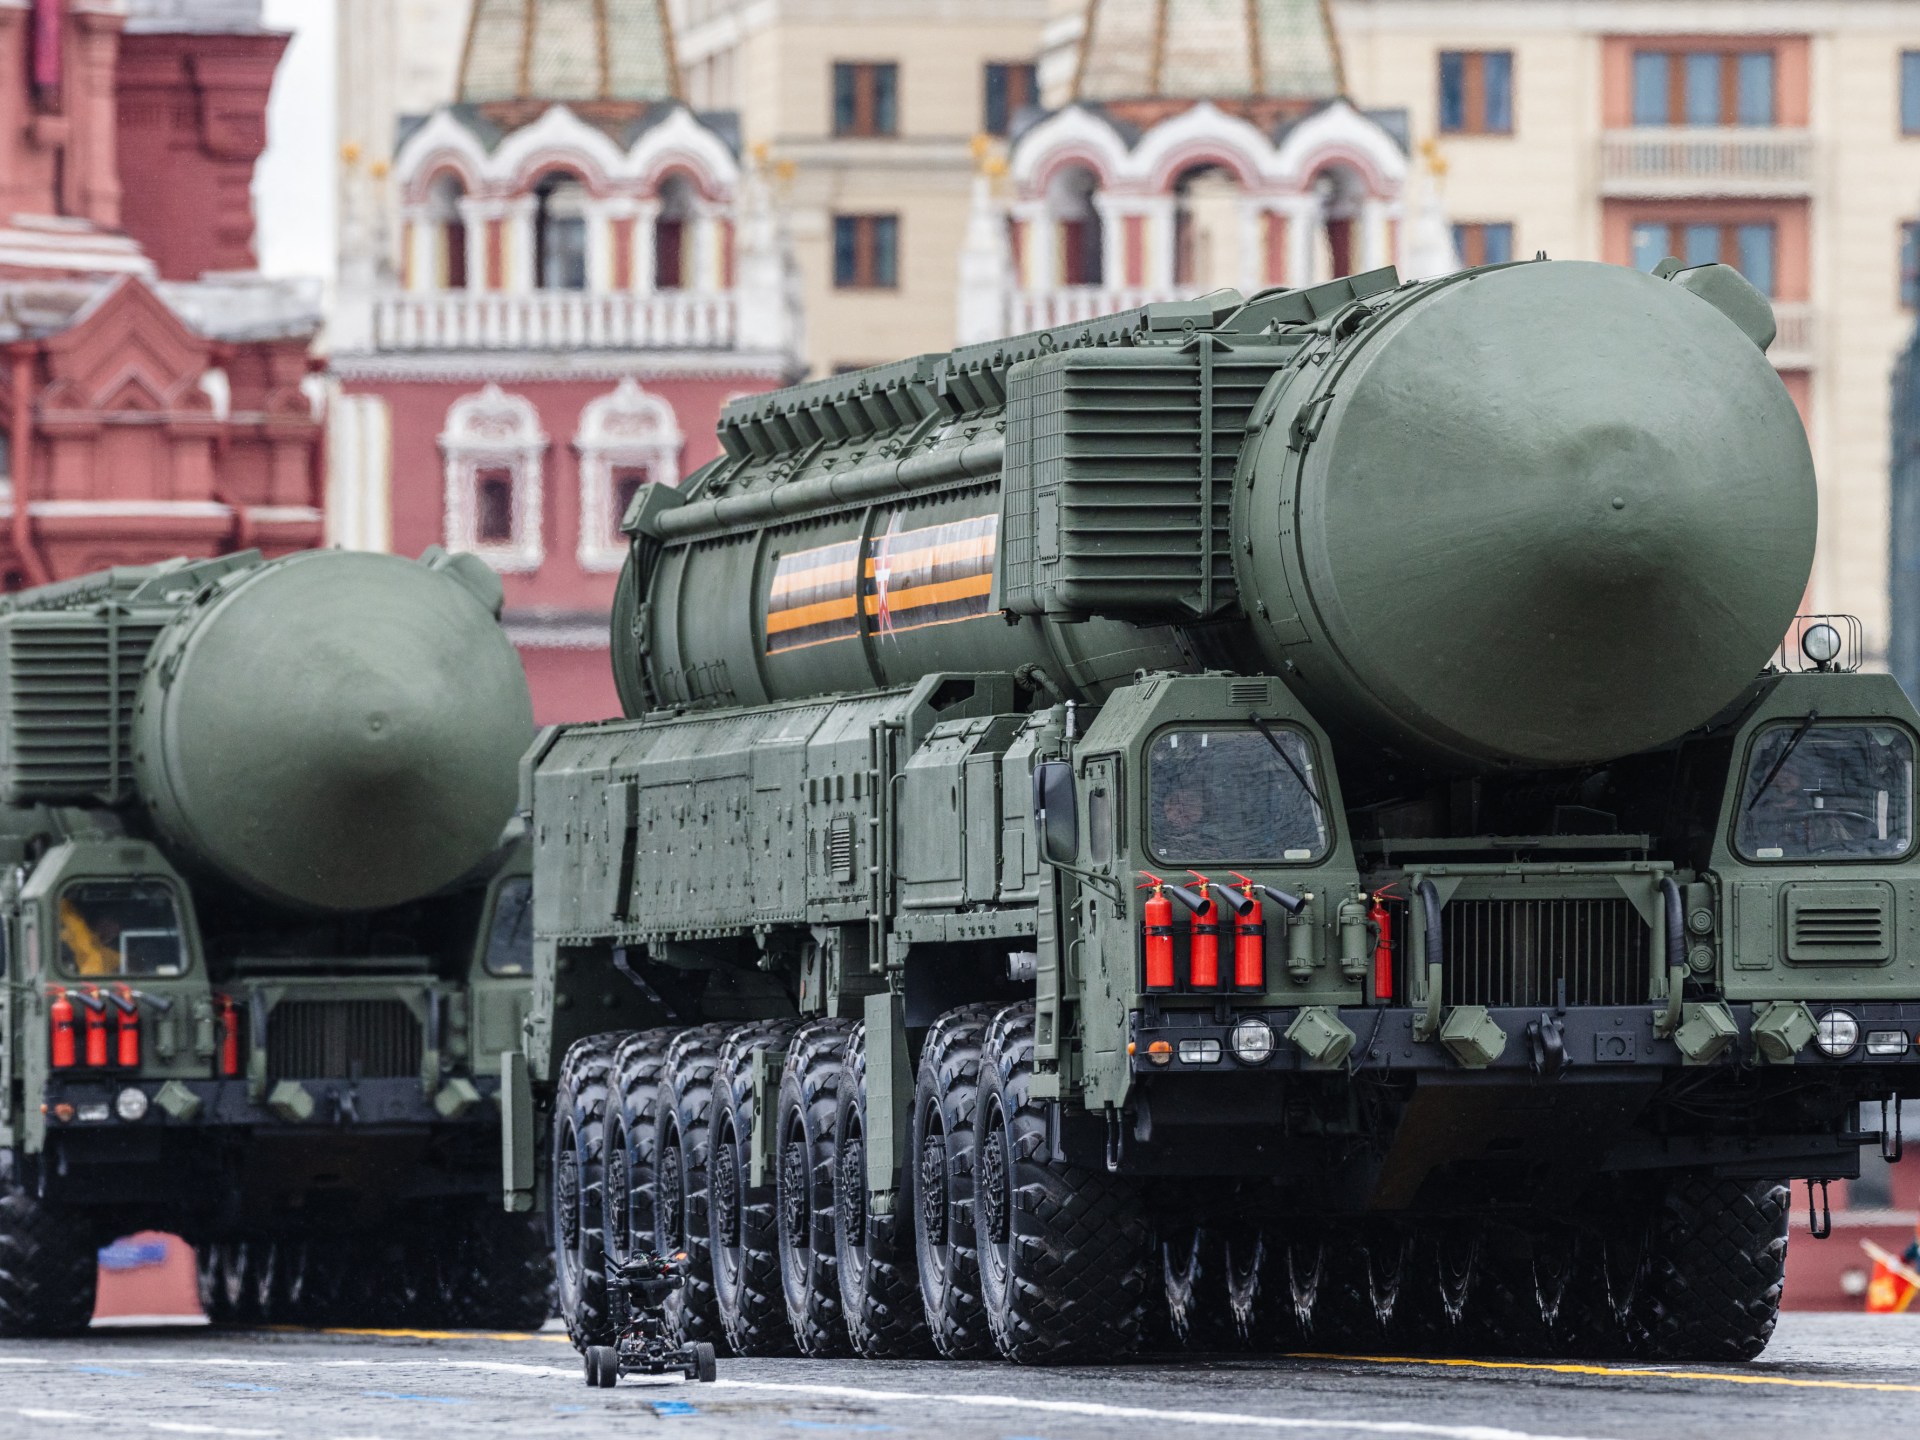 موسكو تعلن تأجيل الاجتماع الأميركي الروسي حول معاهدة "نيو ستارت" النووية إلى أجل غير مسمى